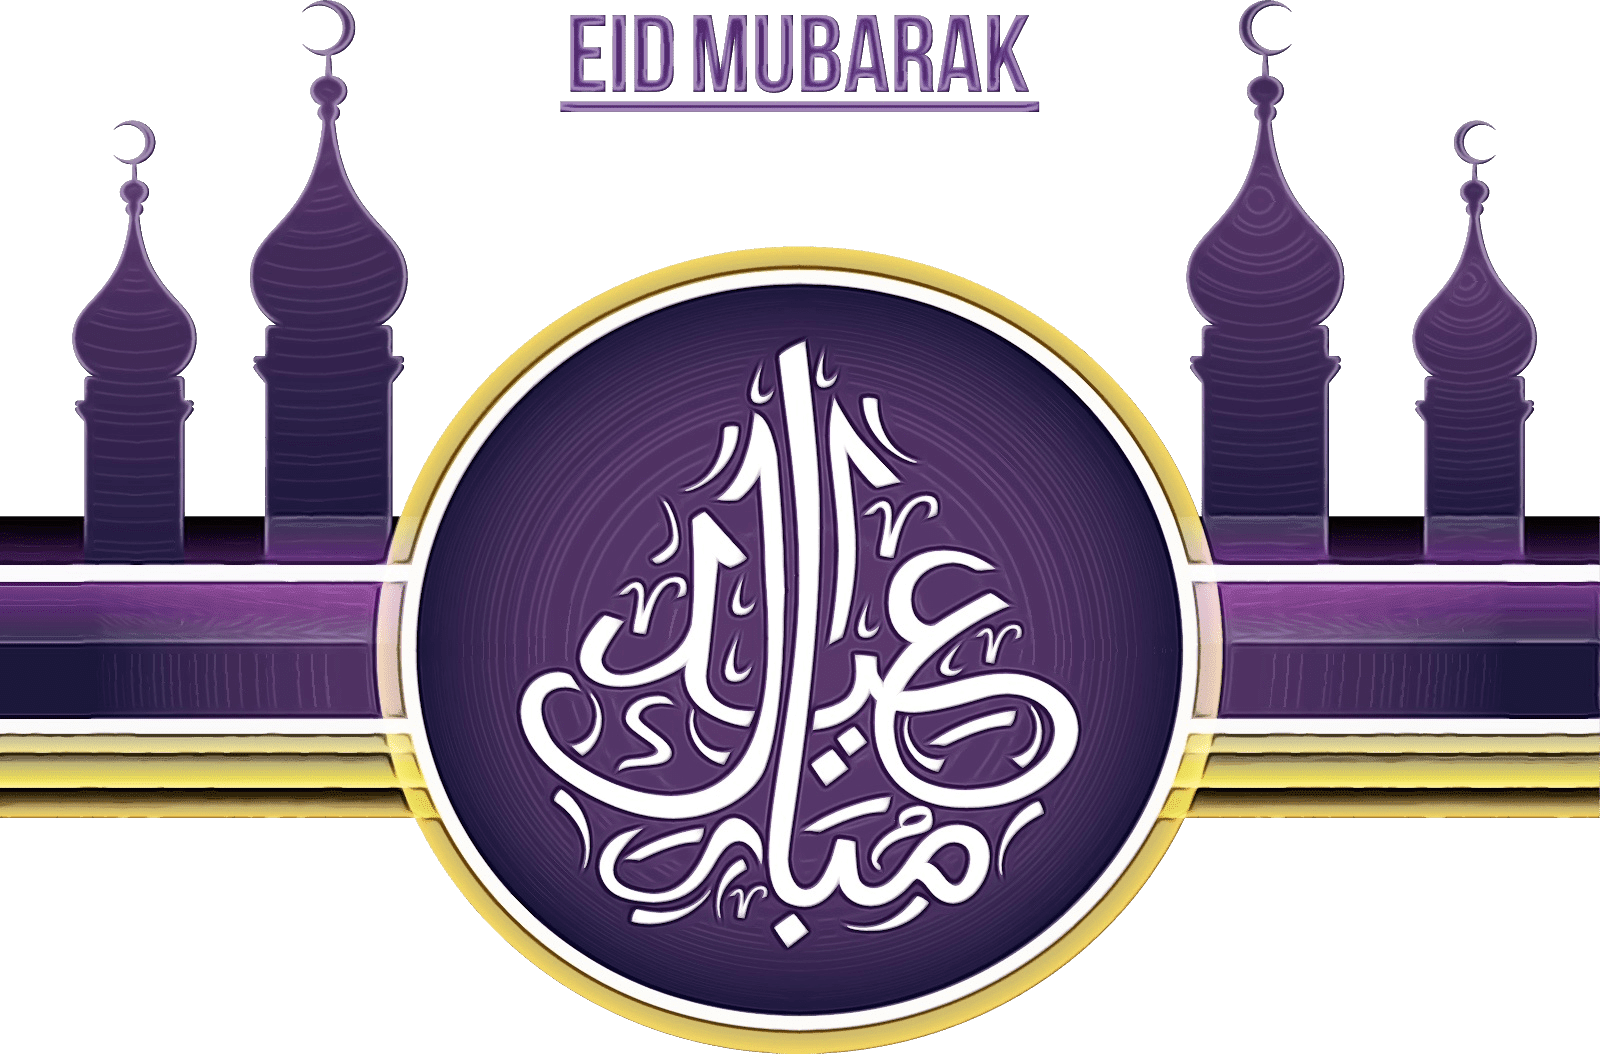 eid-ul-adha-vector-png-images-vector-logo-png-for-eid-ul-adha-mubarak